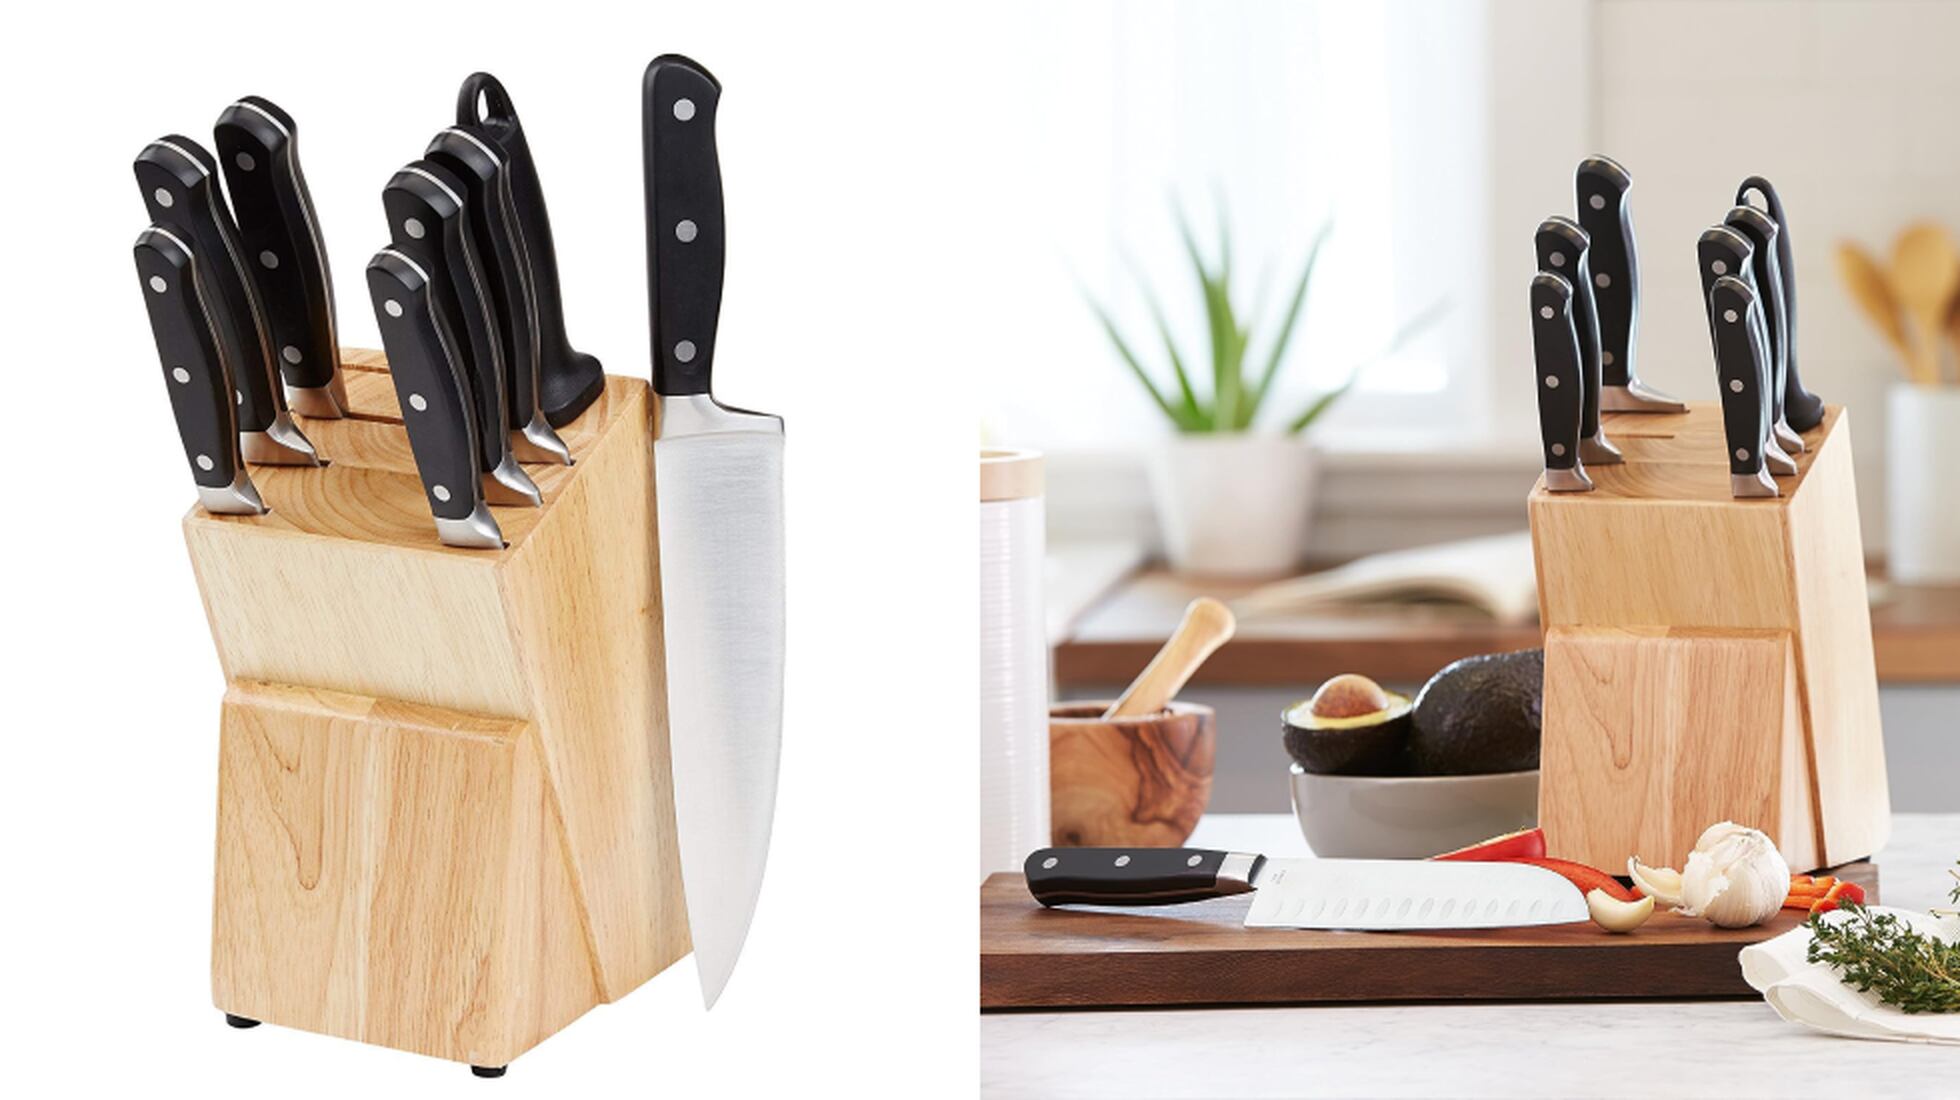 Cómo hacer un organizador de cuchillos? 